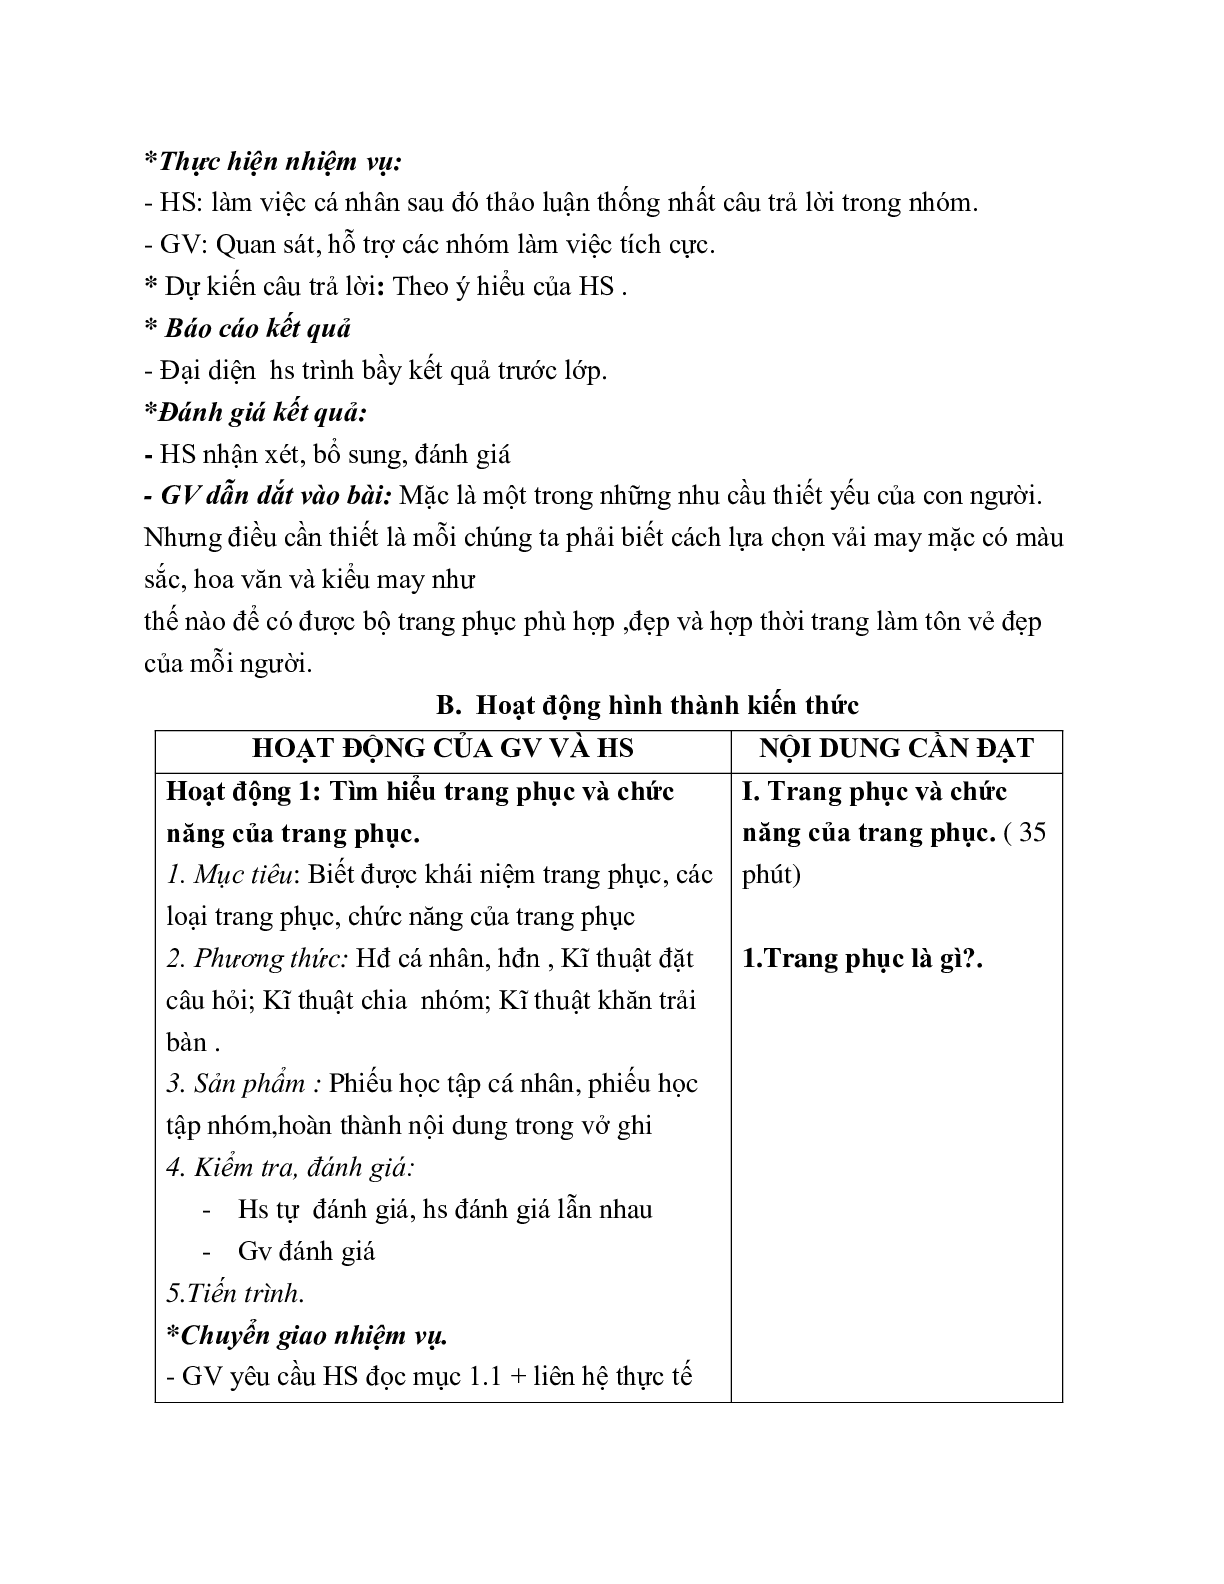 GIÁO ÁN CÔNG NGHỆ 6 BÀI 2: LỰA CHỌN TRANG PHỤC  (T1) MỚI NHẤT (trang 3)